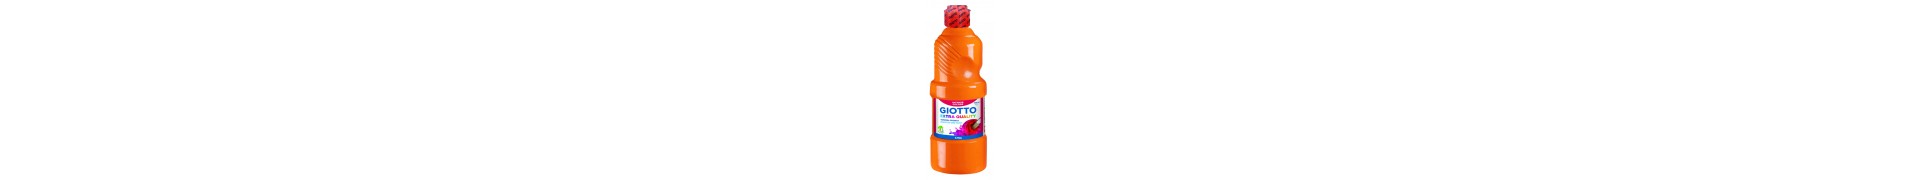 Gouache GIOTTO - Liquide - Flacon: 500 ml - 532805 Orange 